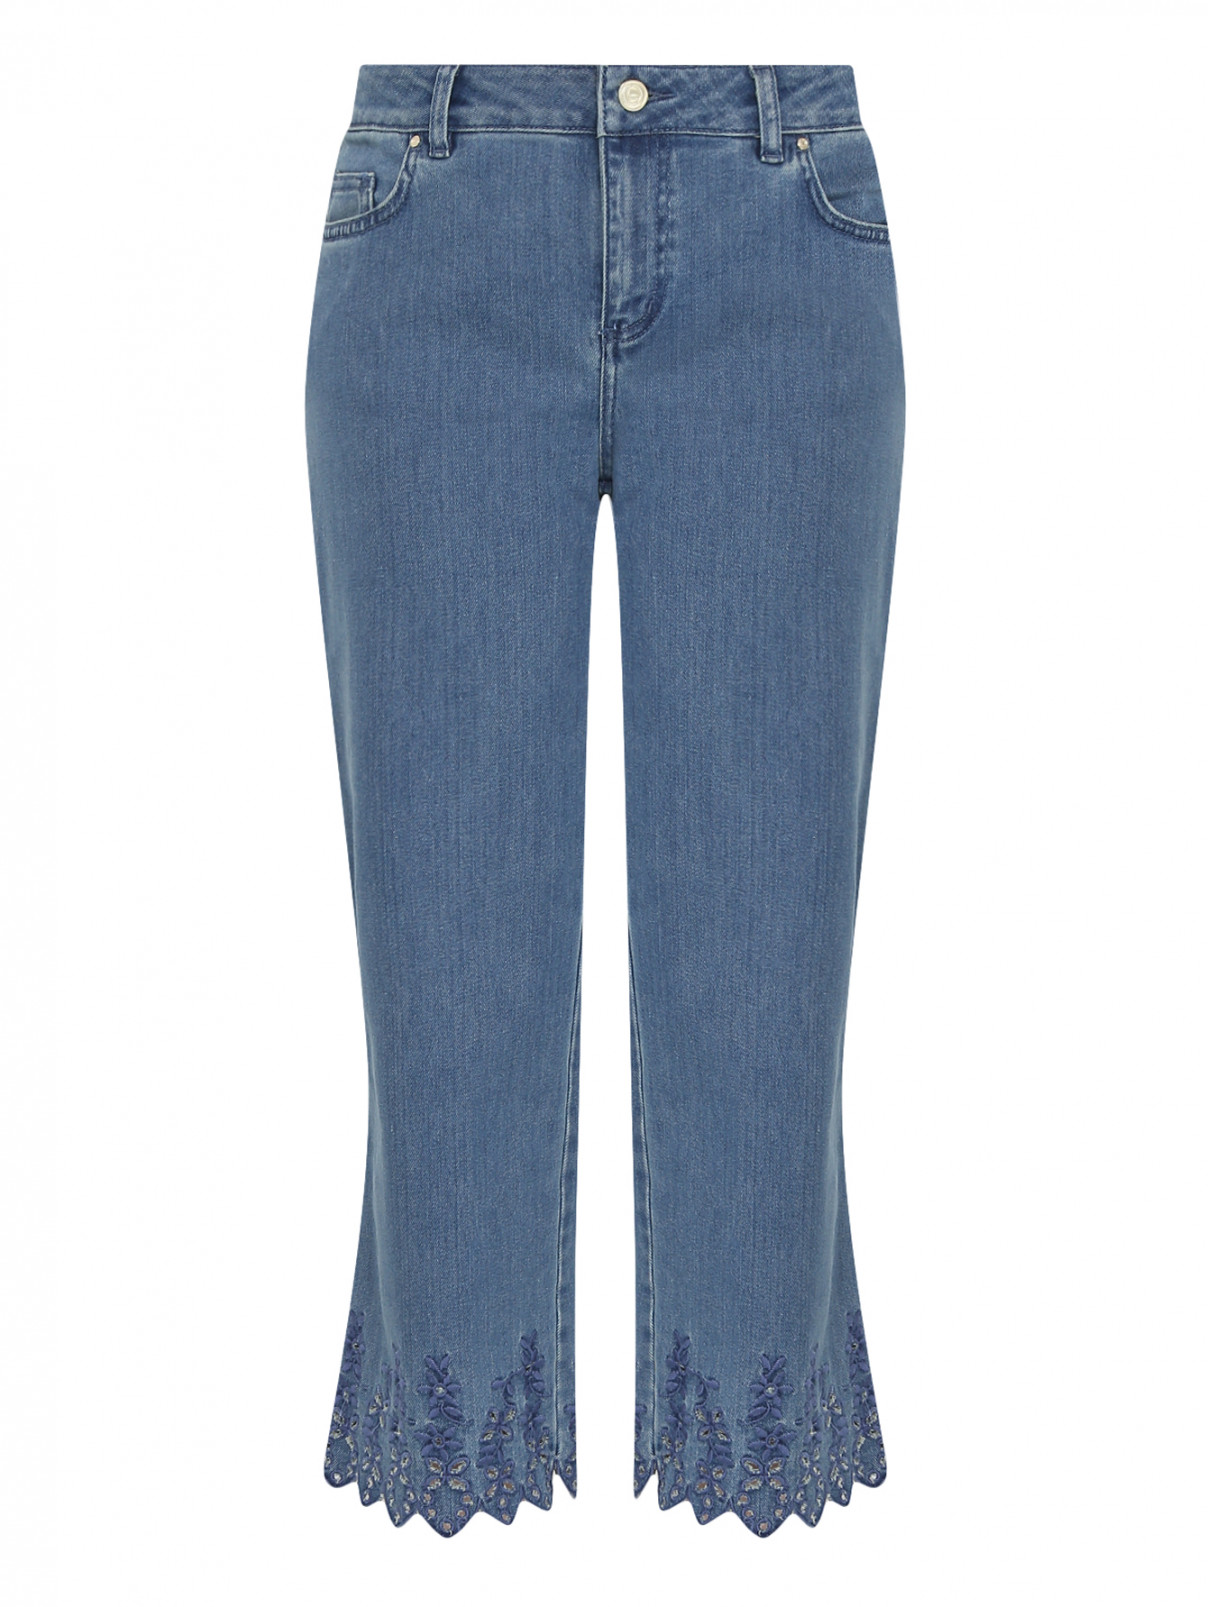 Укороченные джинсы с кружевной отделкой Marina Rinaldi  –  Общий вид  – Цвет:  Синий